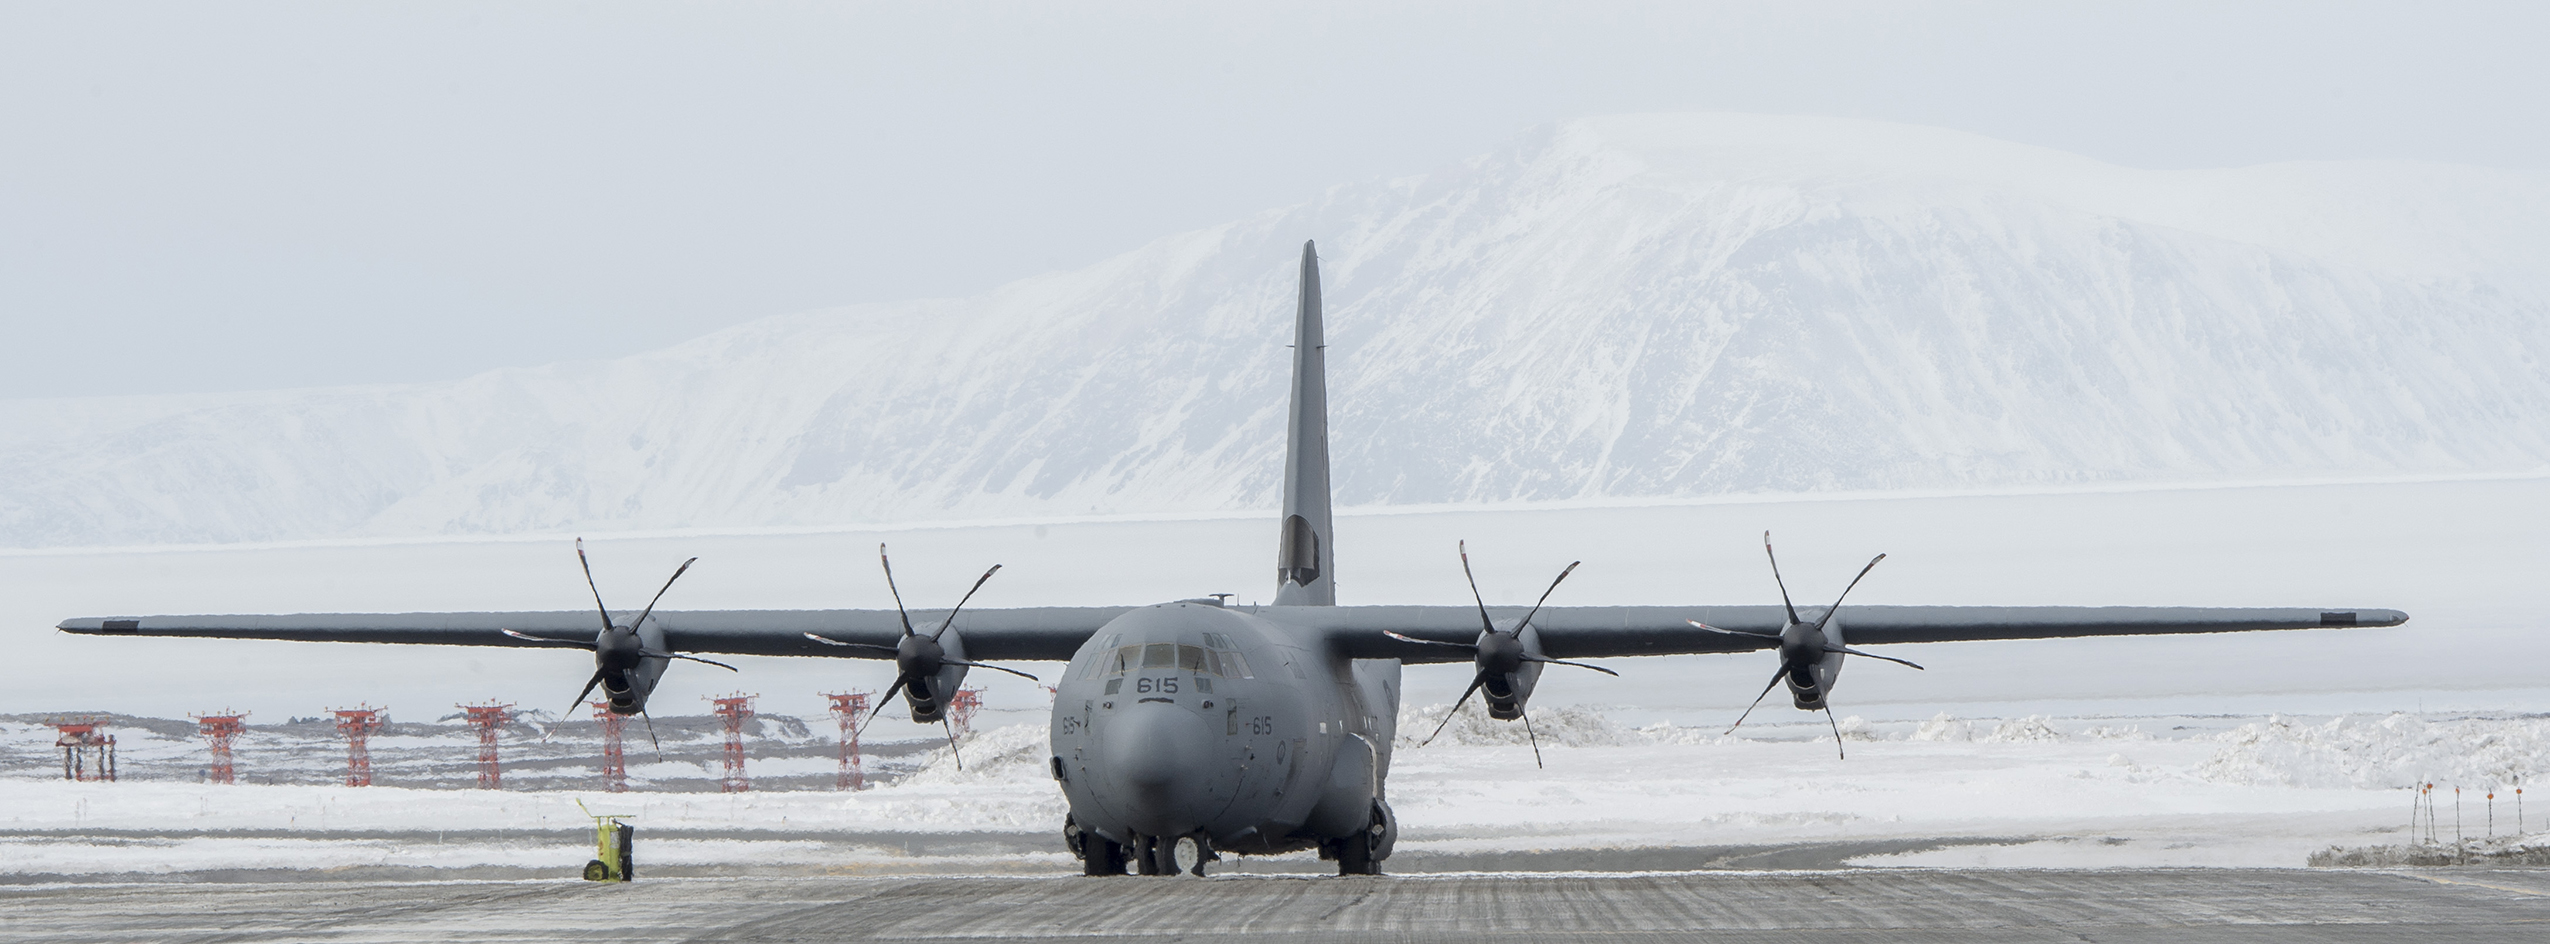 Un CC-130 Hercules se stationne sur la piste à Thulé, au Groenland, en vue du prochain vol à destination d’Alert pendant l’opération Boxtop, le 27 avril 2017. PHOTO : Caporal Audrey Solomon